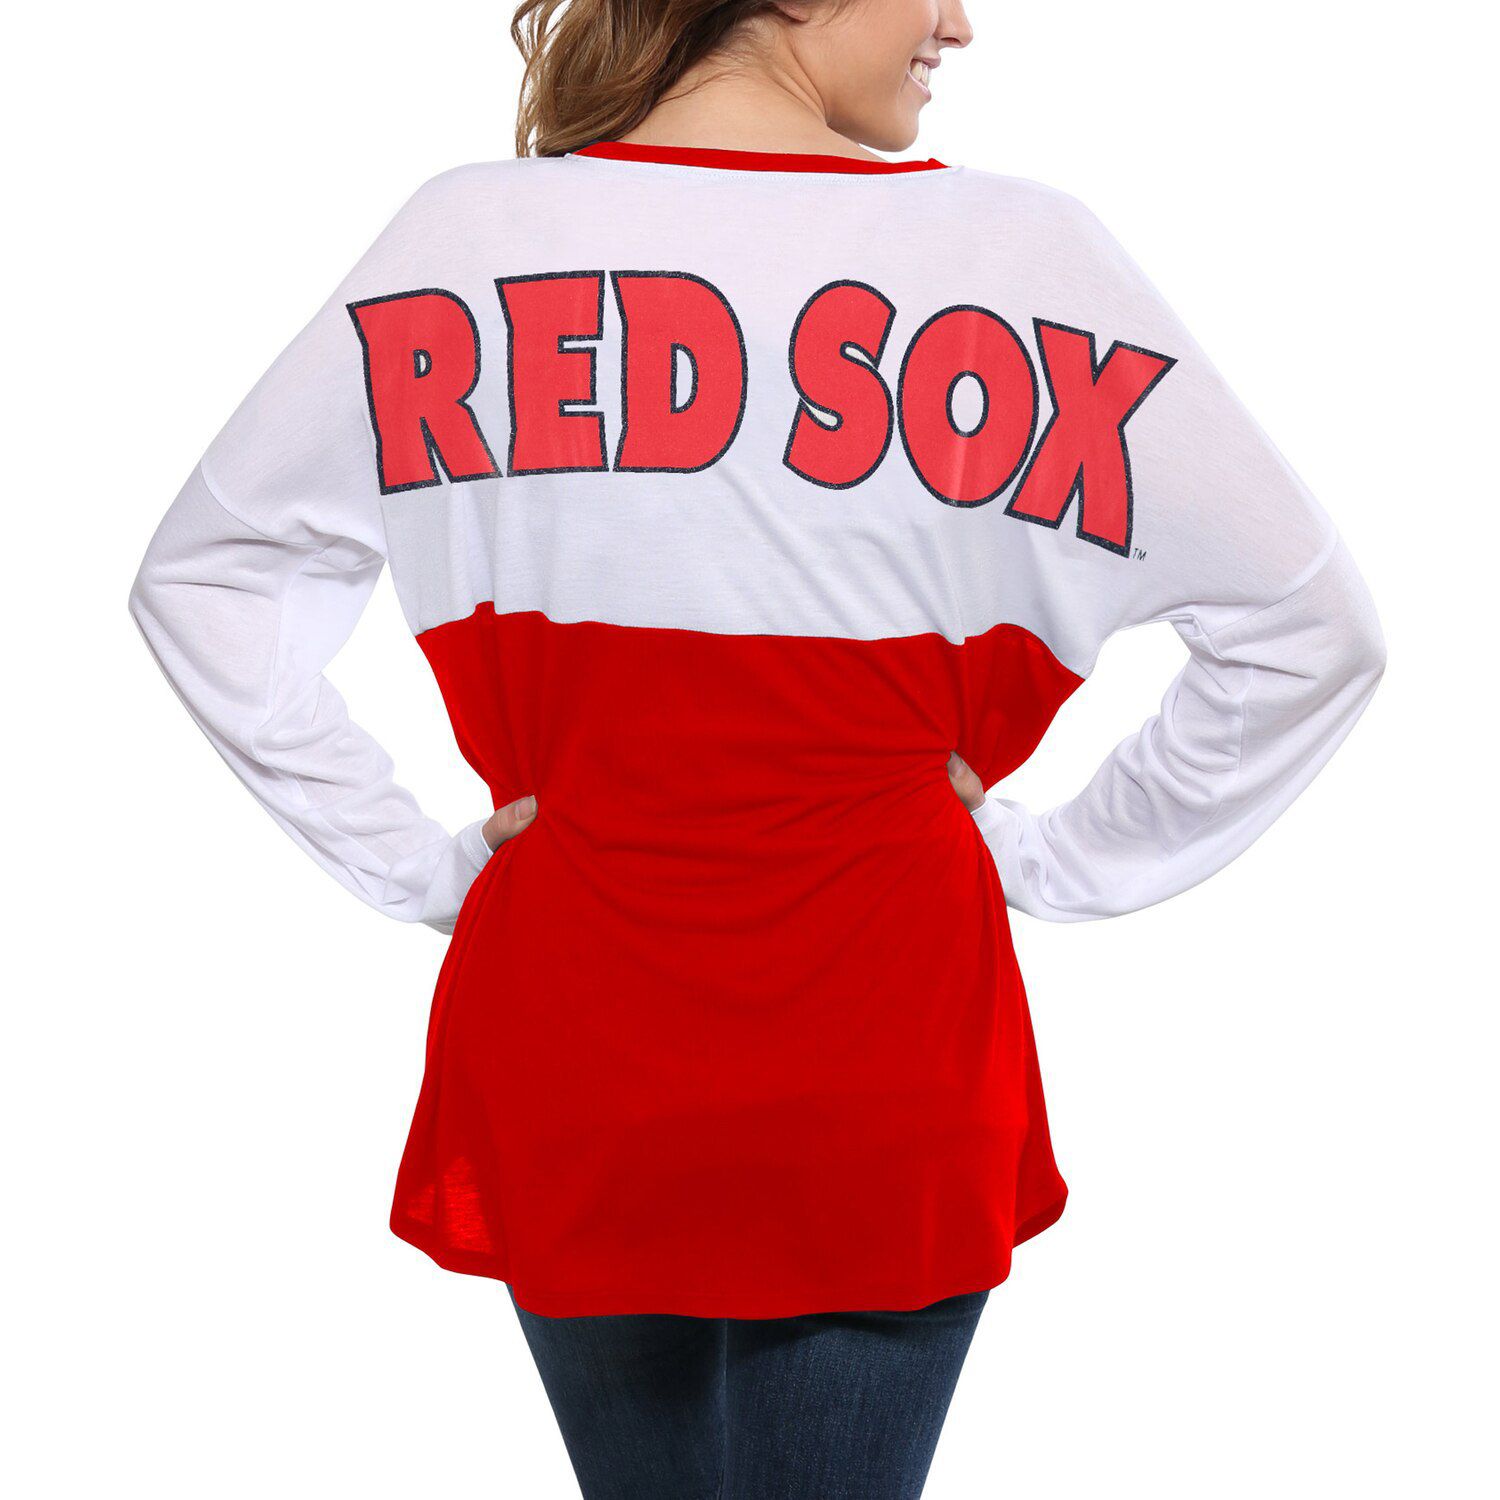 women's long sleeve red sox shirt